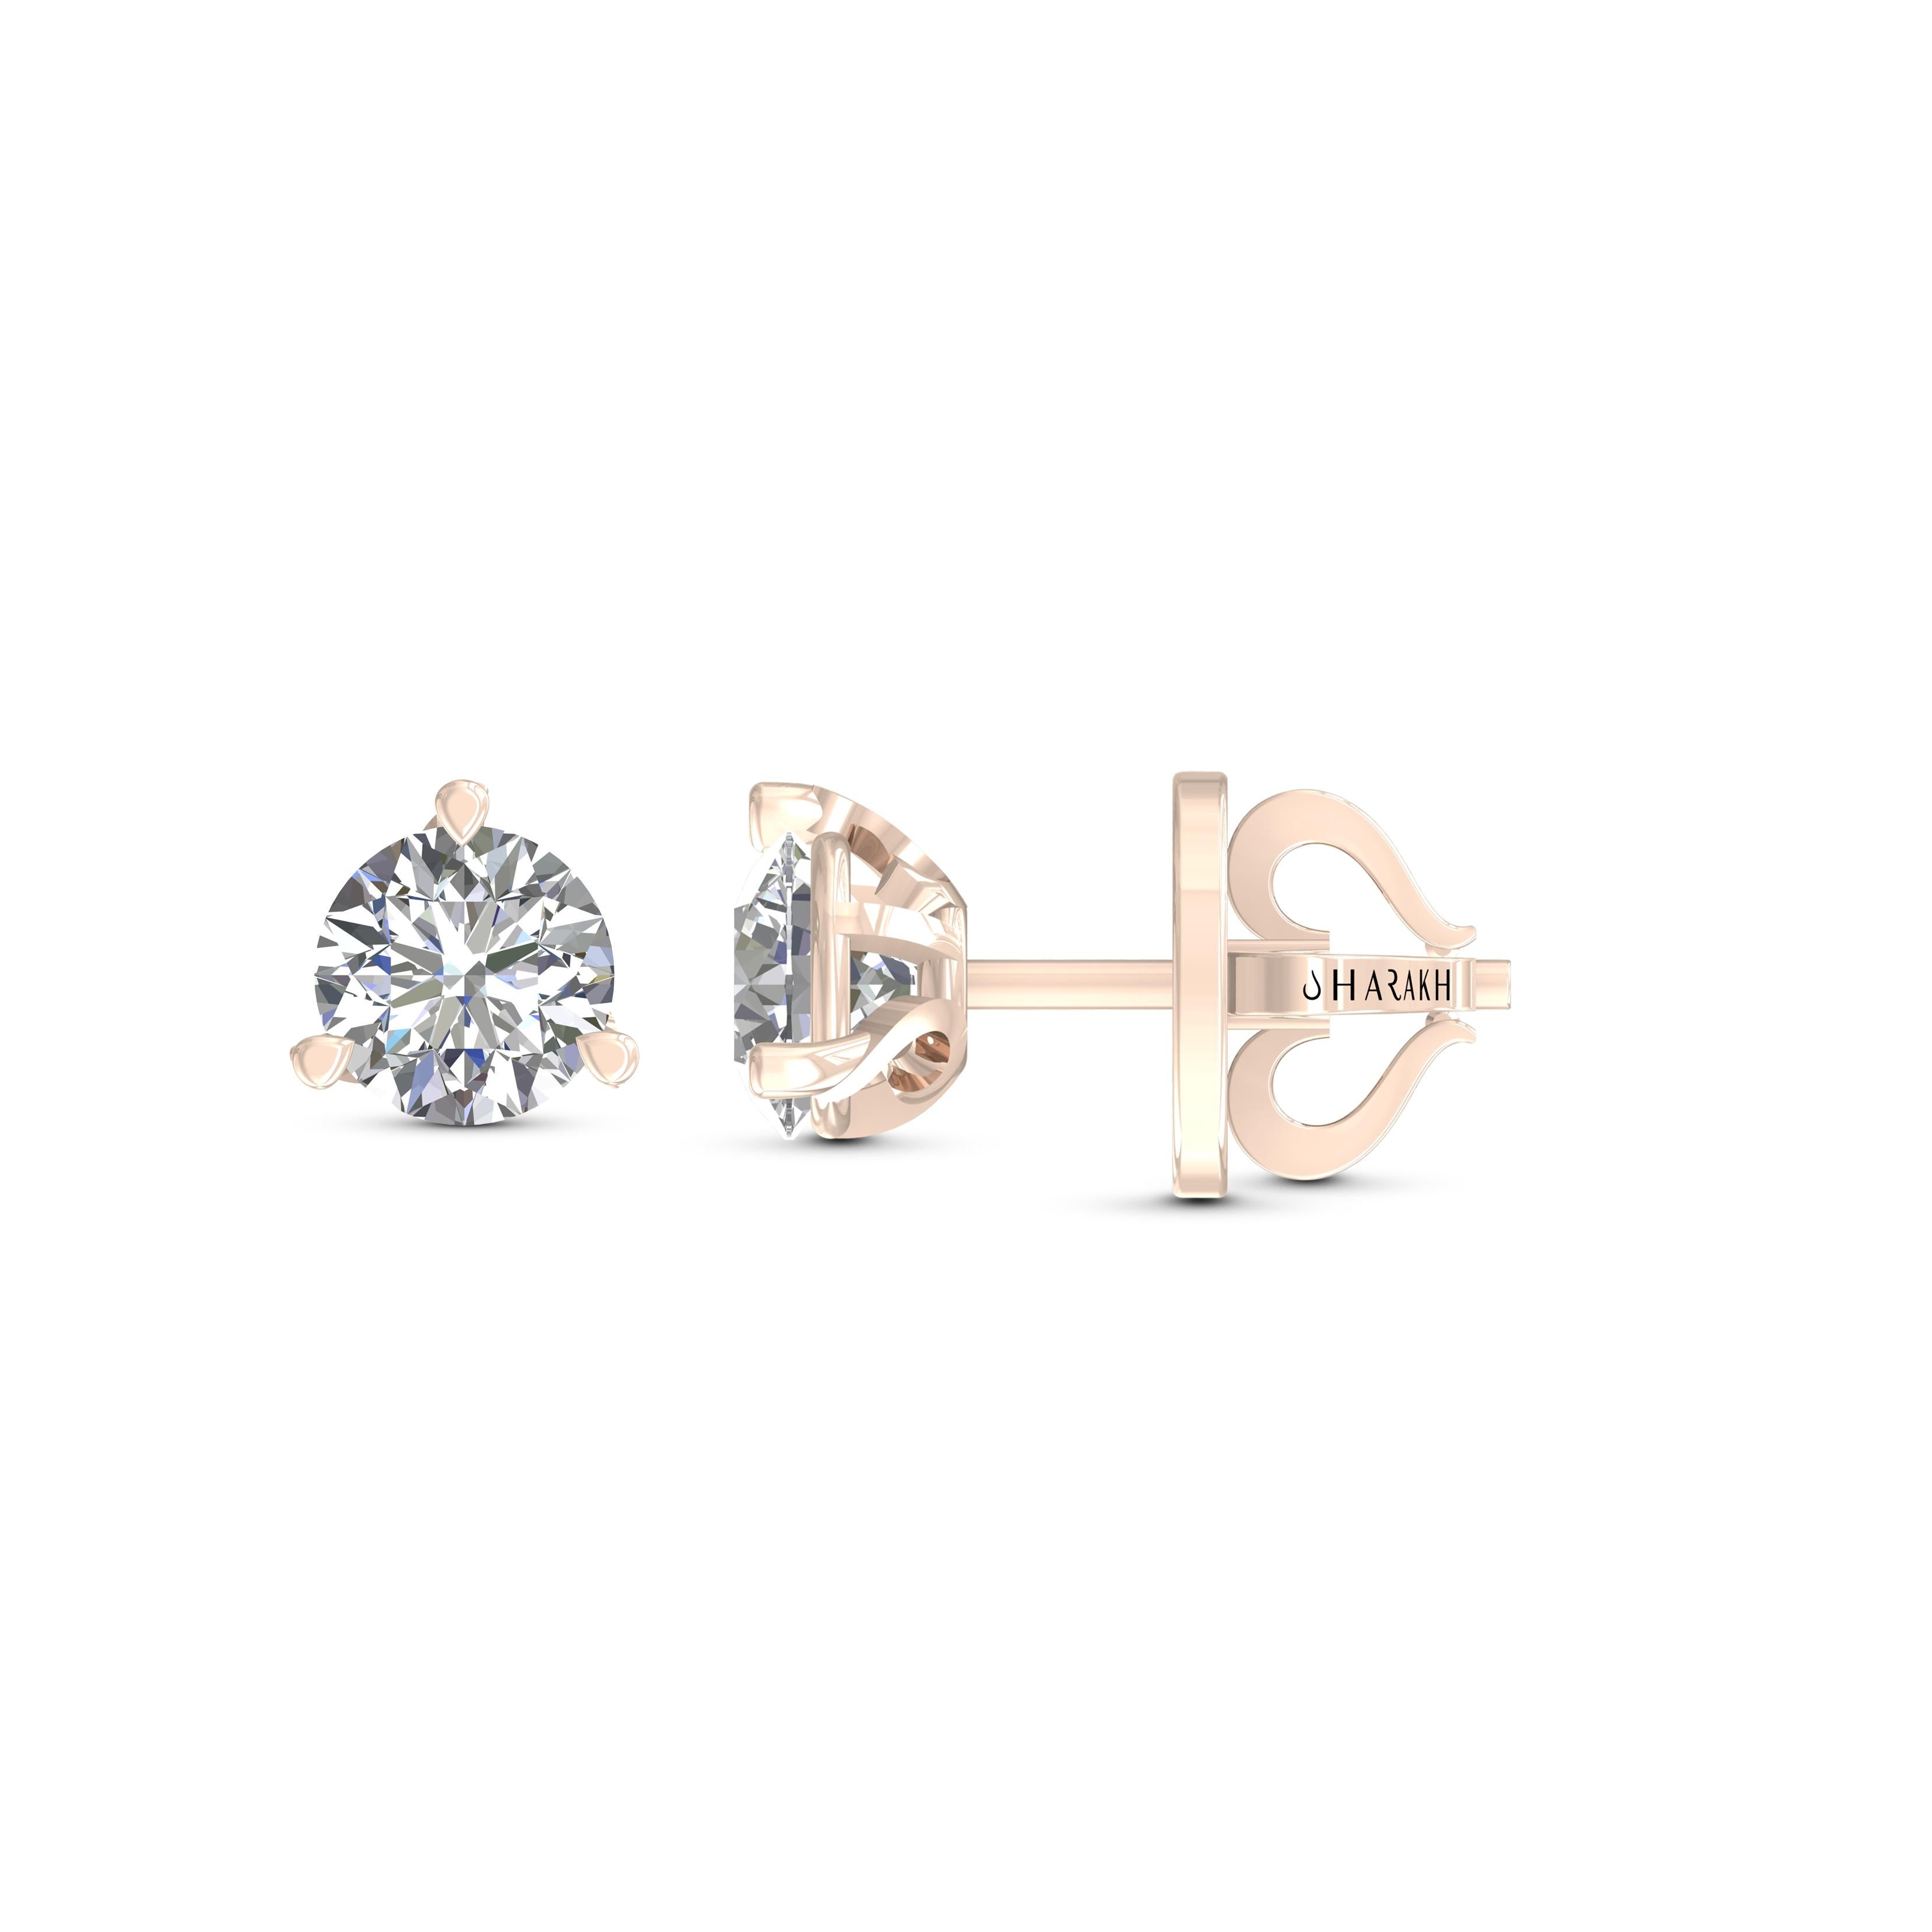 Ces clous classiques en diamant certifié GIA mettent en valeur une paire de diamants parfaitement assortis d'un poids total de 2,00 carats. Fabriquées en or rose 18 carats, dans une monture martini, elles sont également disponibles en or blanc et